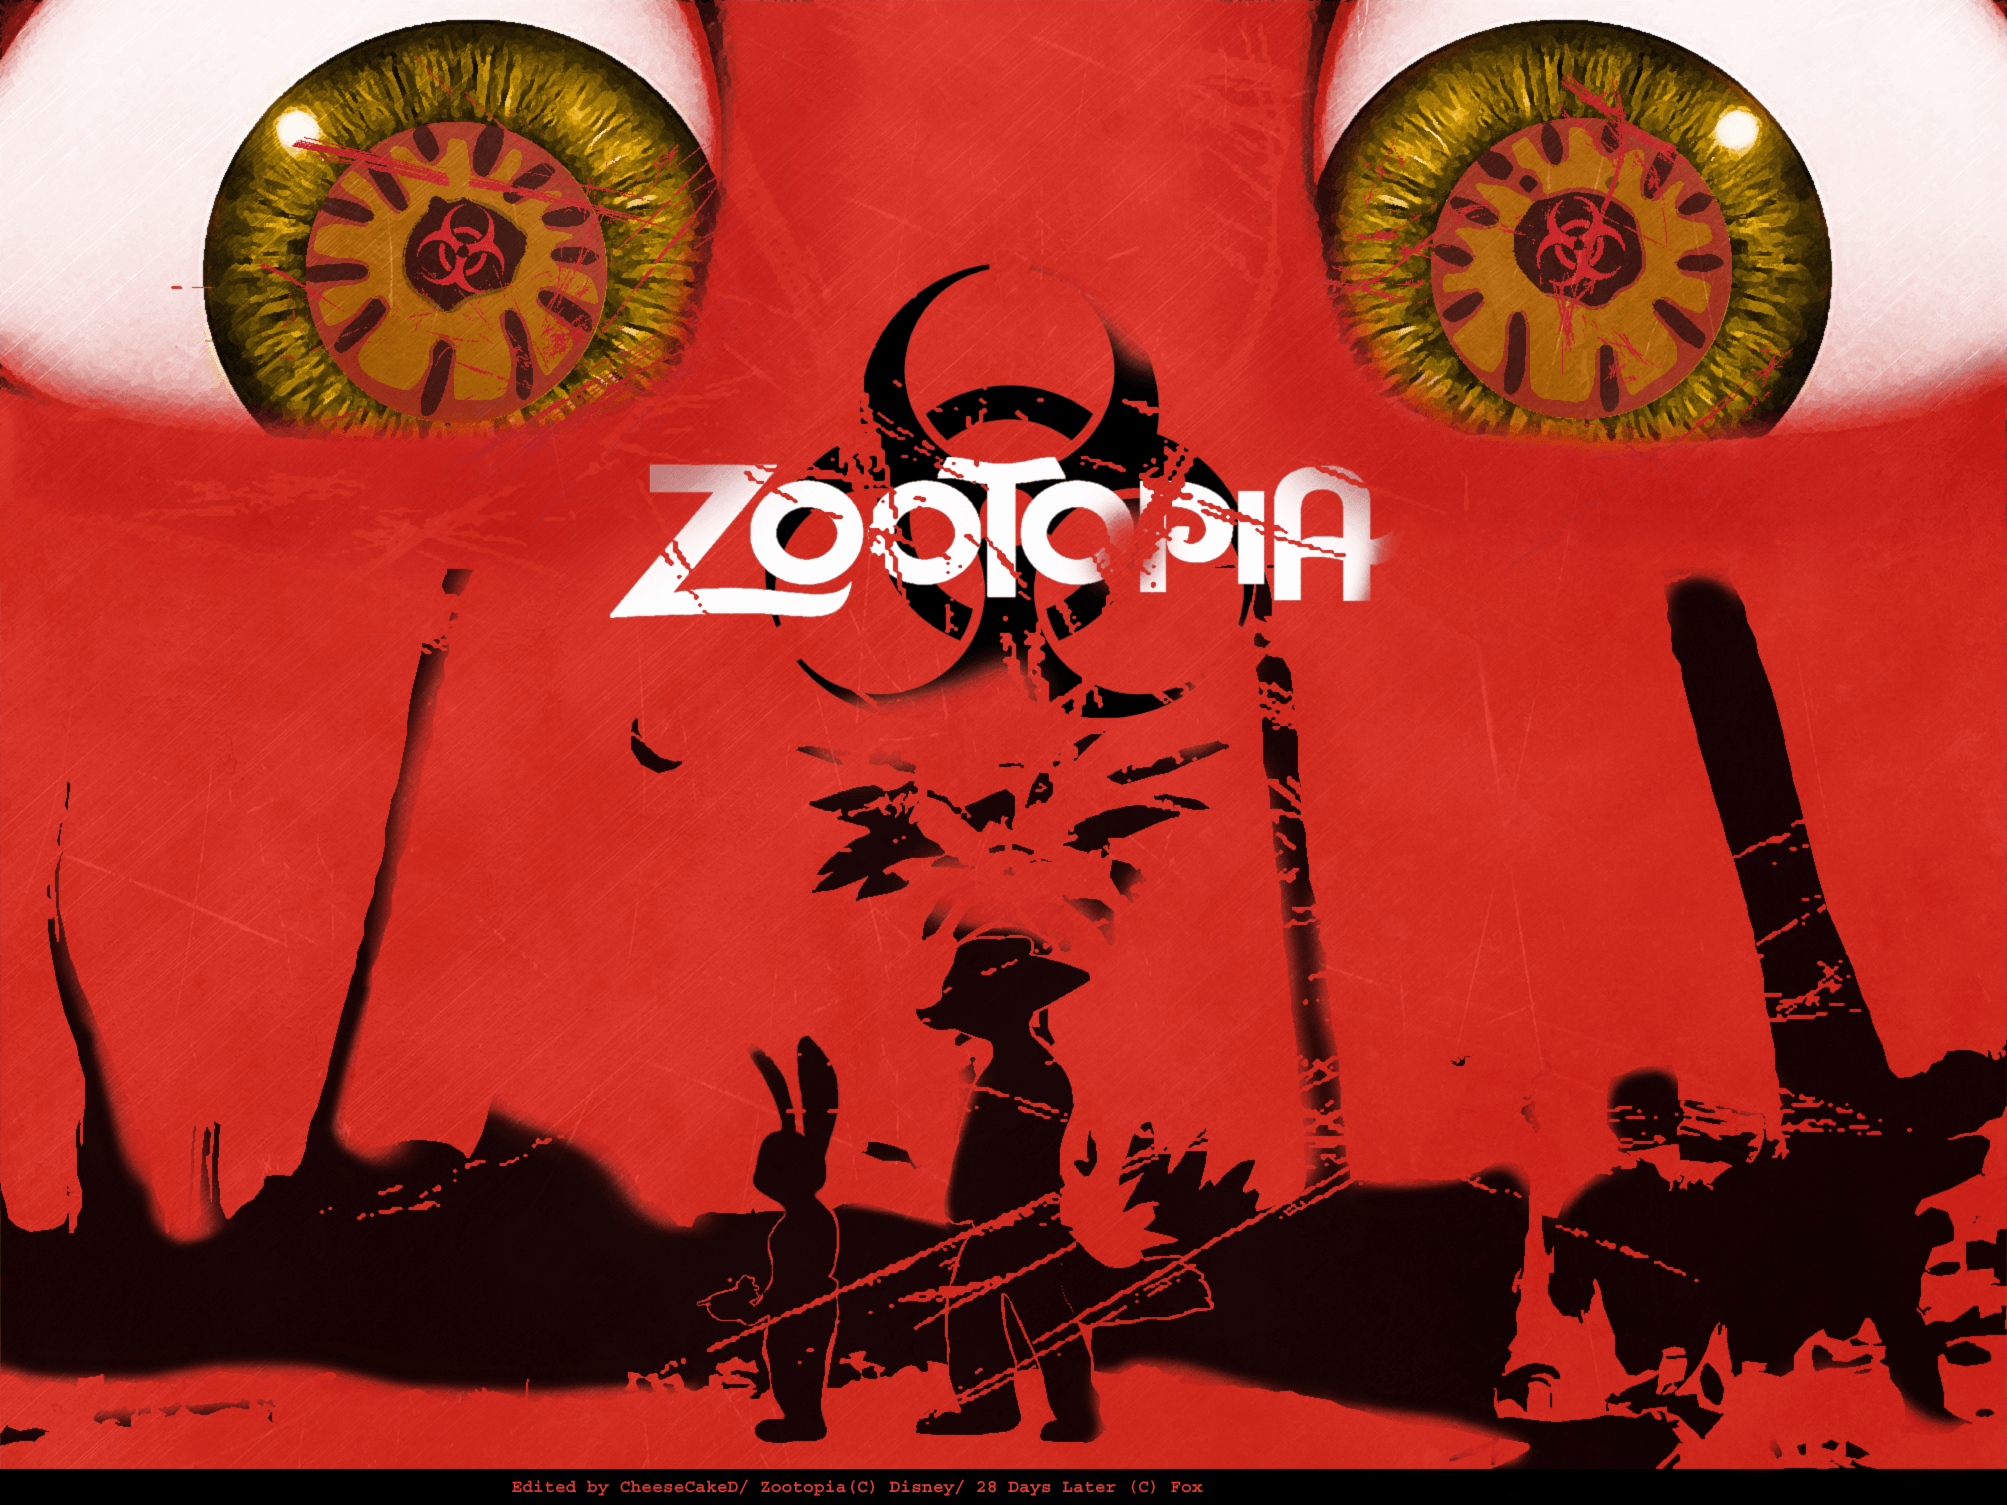 Zootopia x Days Later